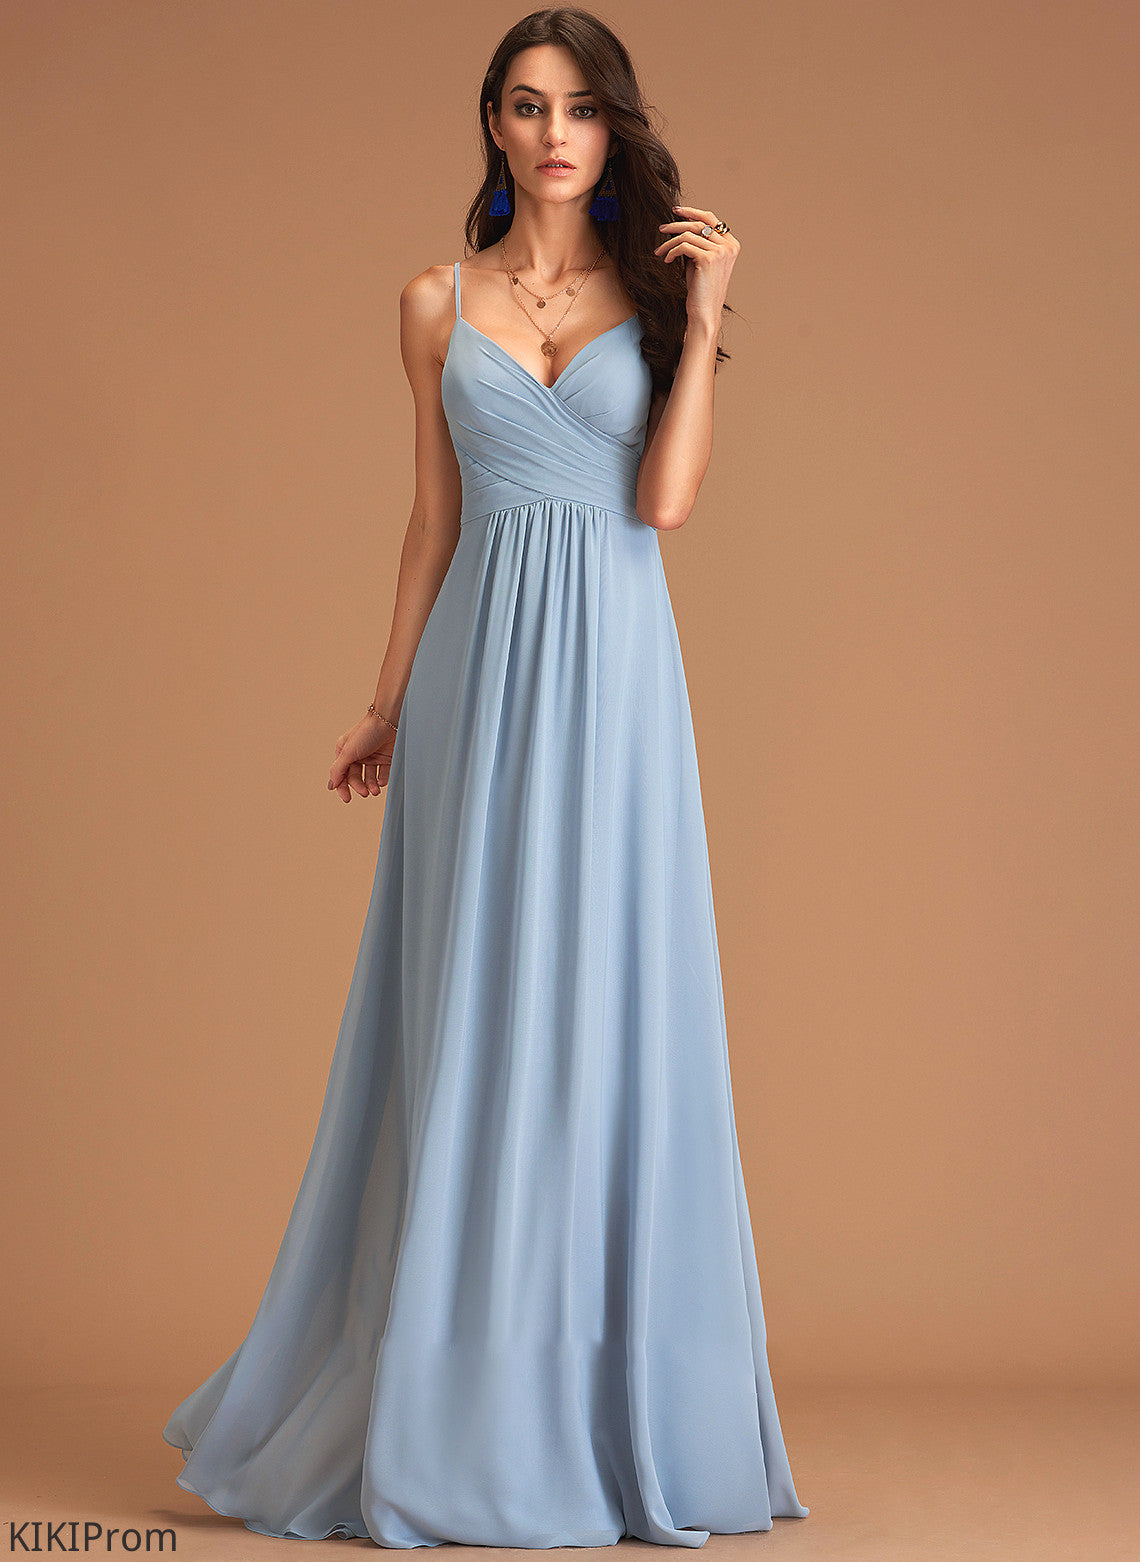 Embellishment Length Silhouette Ruffle V-neck Floor-Length Fabric A-Line Neckline Nyla Bridesmaid Dresses